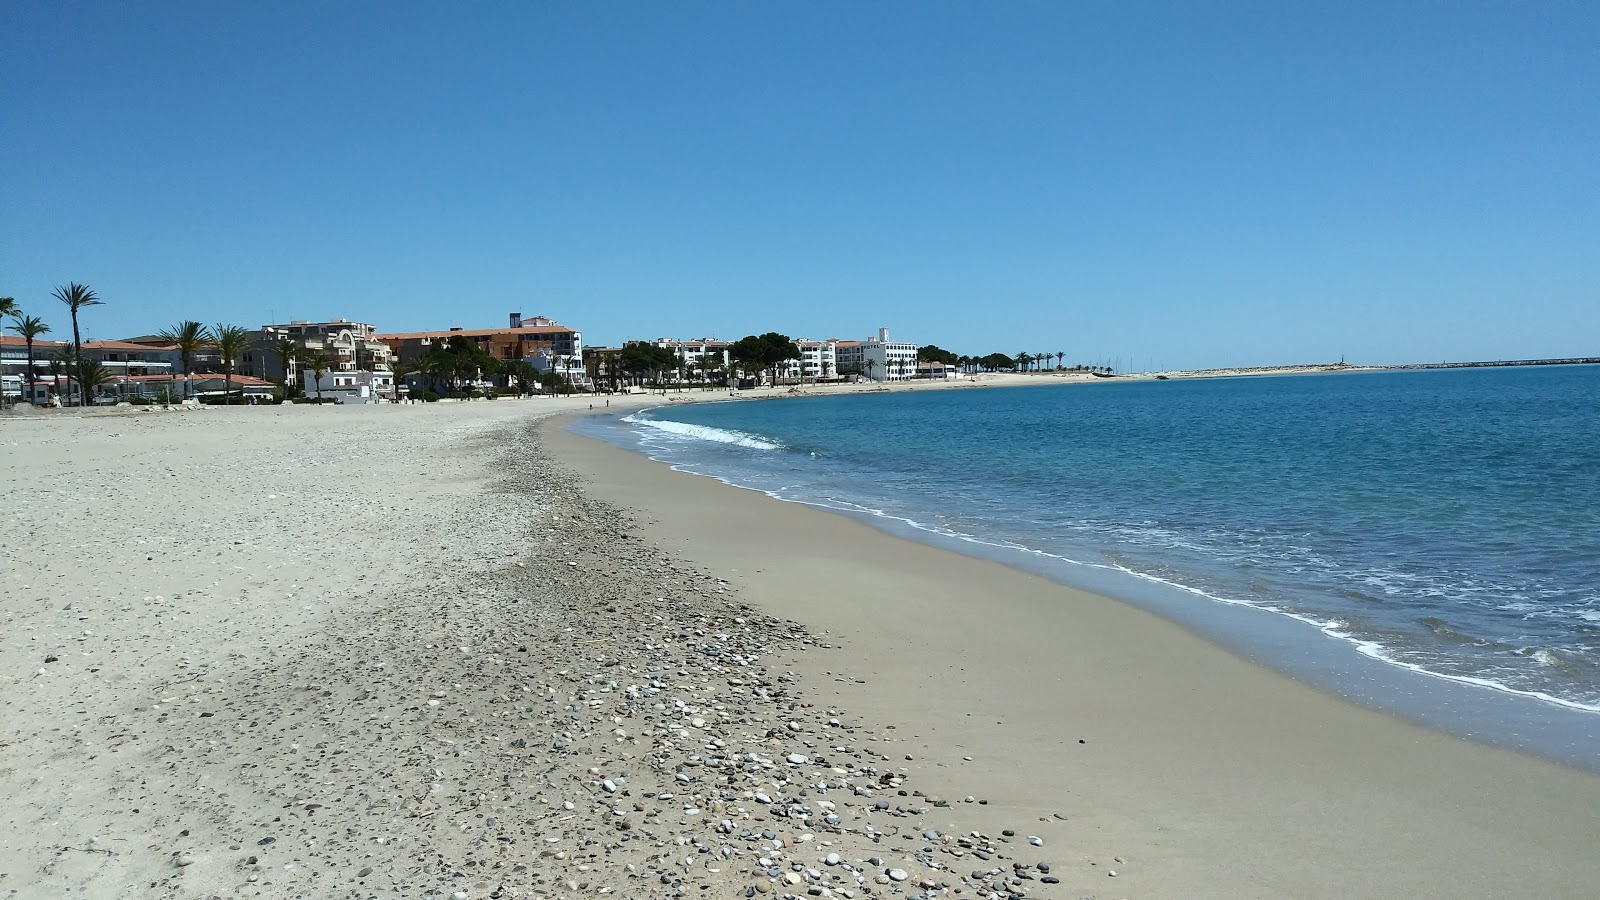 L'Hospitalet beach'in fotoğrafı turkuaz su yüzey ile